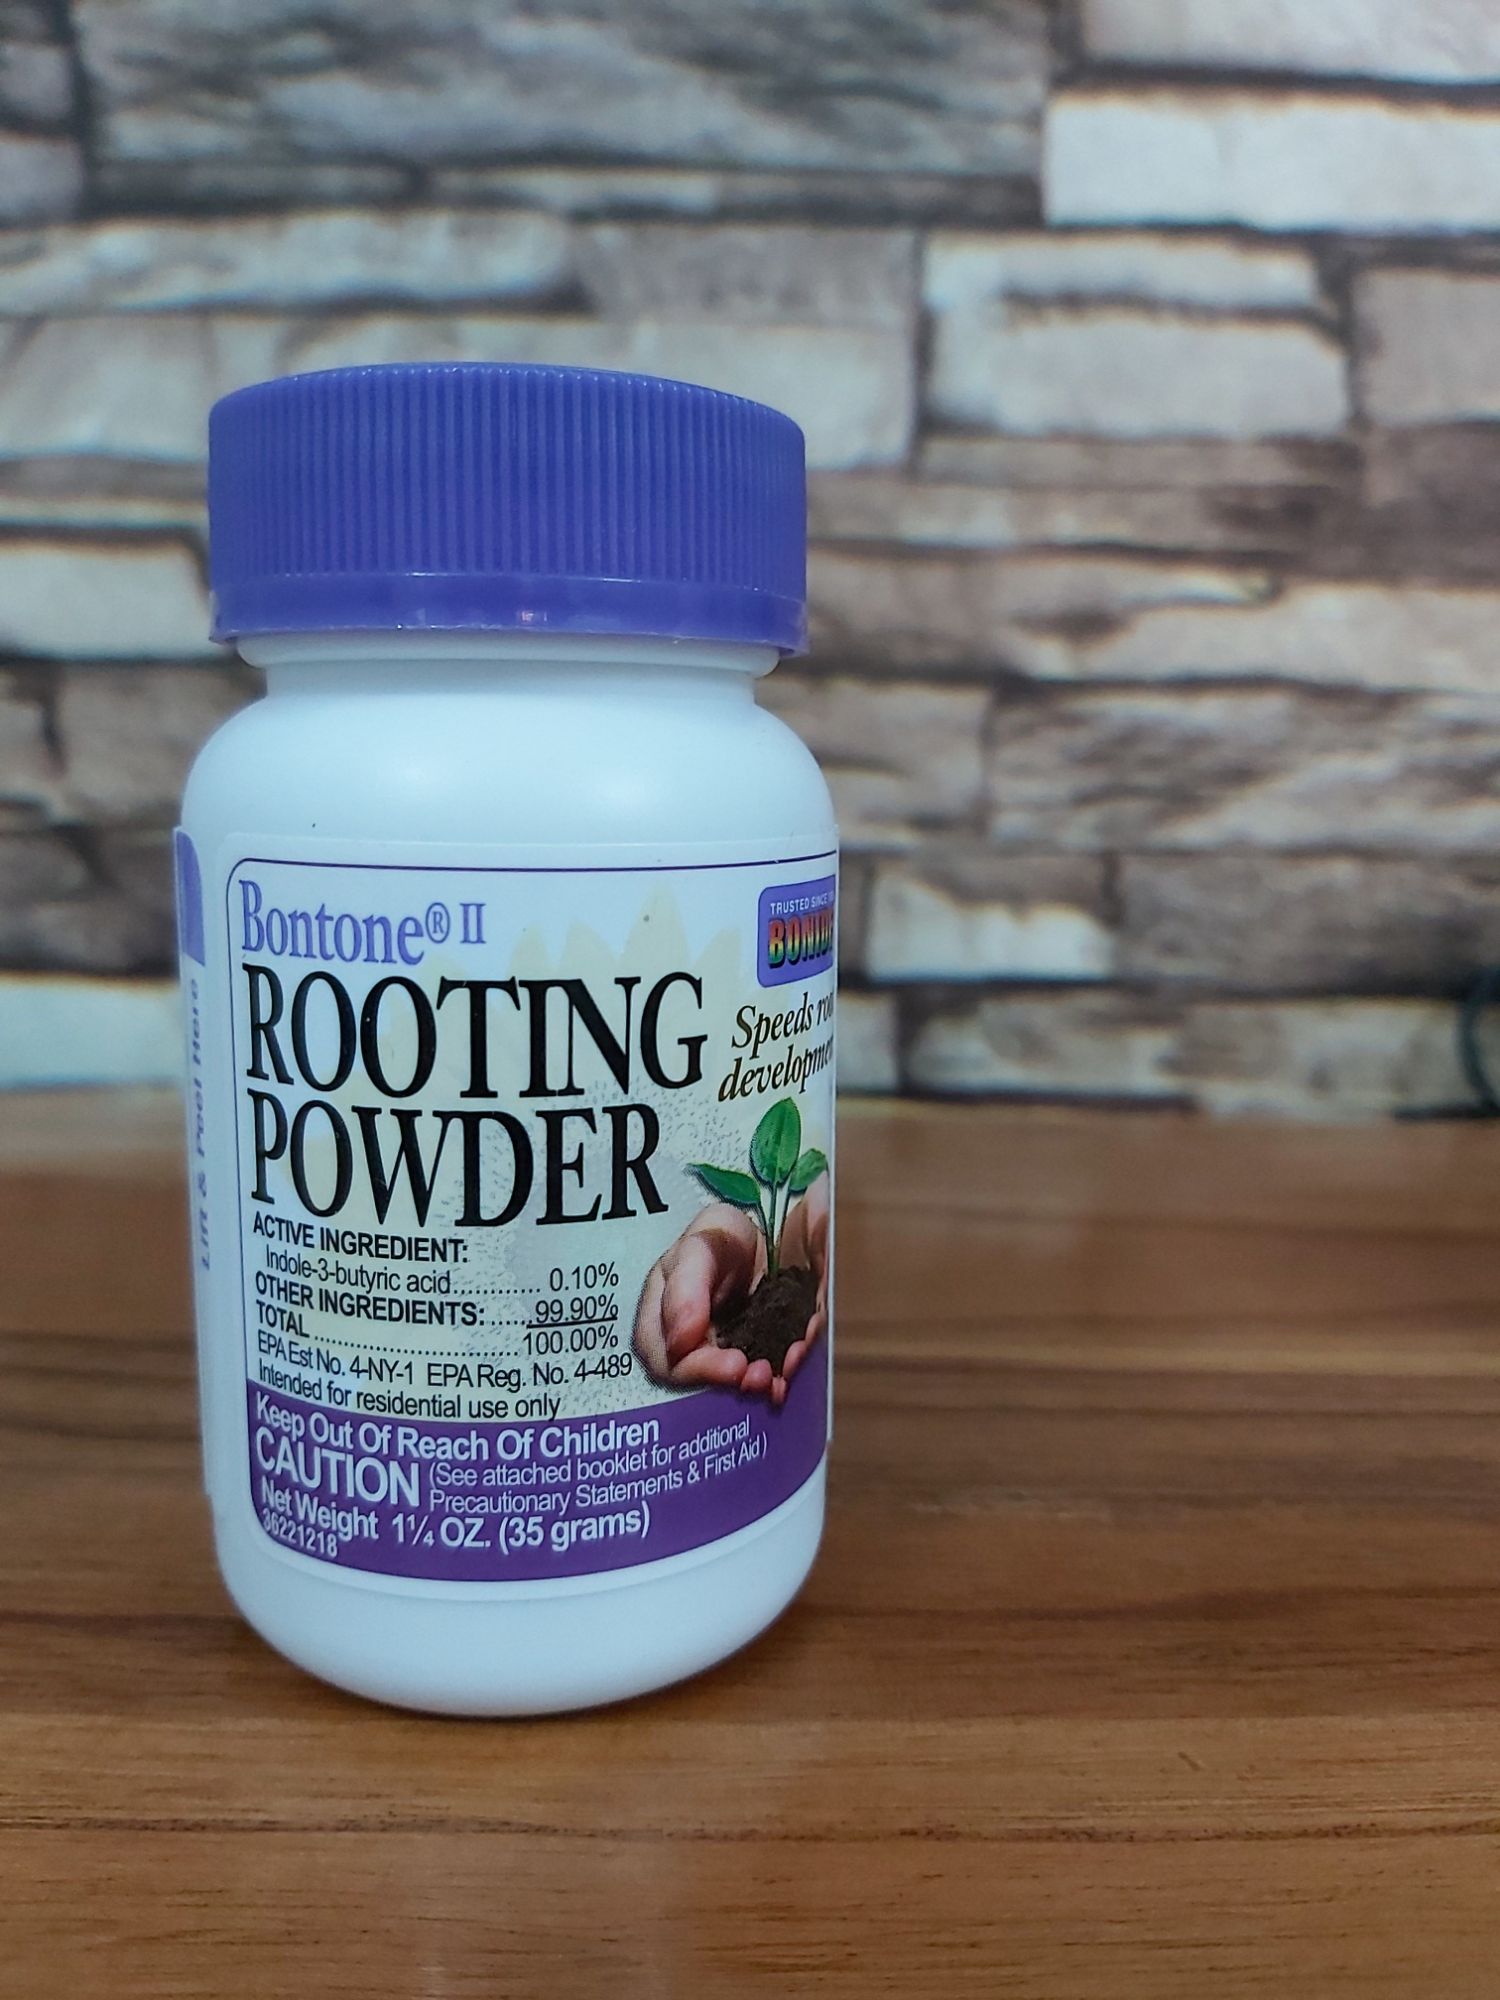 [HCM]Bột kích rễ cho cây trồng Rooting Powder 35g (CH USA)